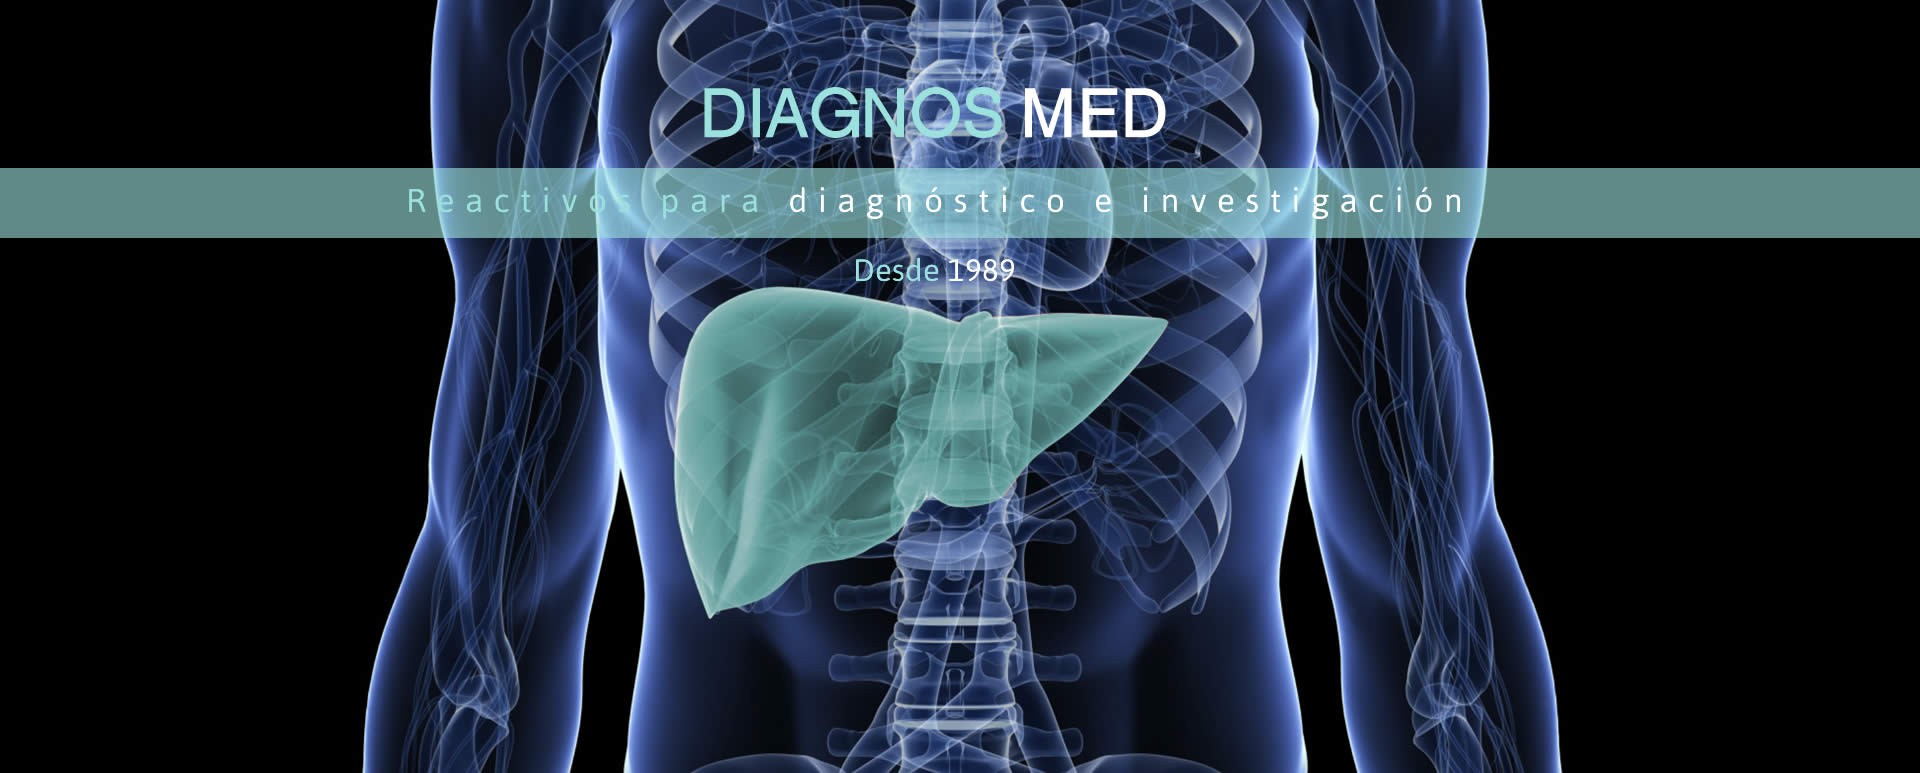 Diagnos Med. Reactivos para diagnostico e investigación desde 1989